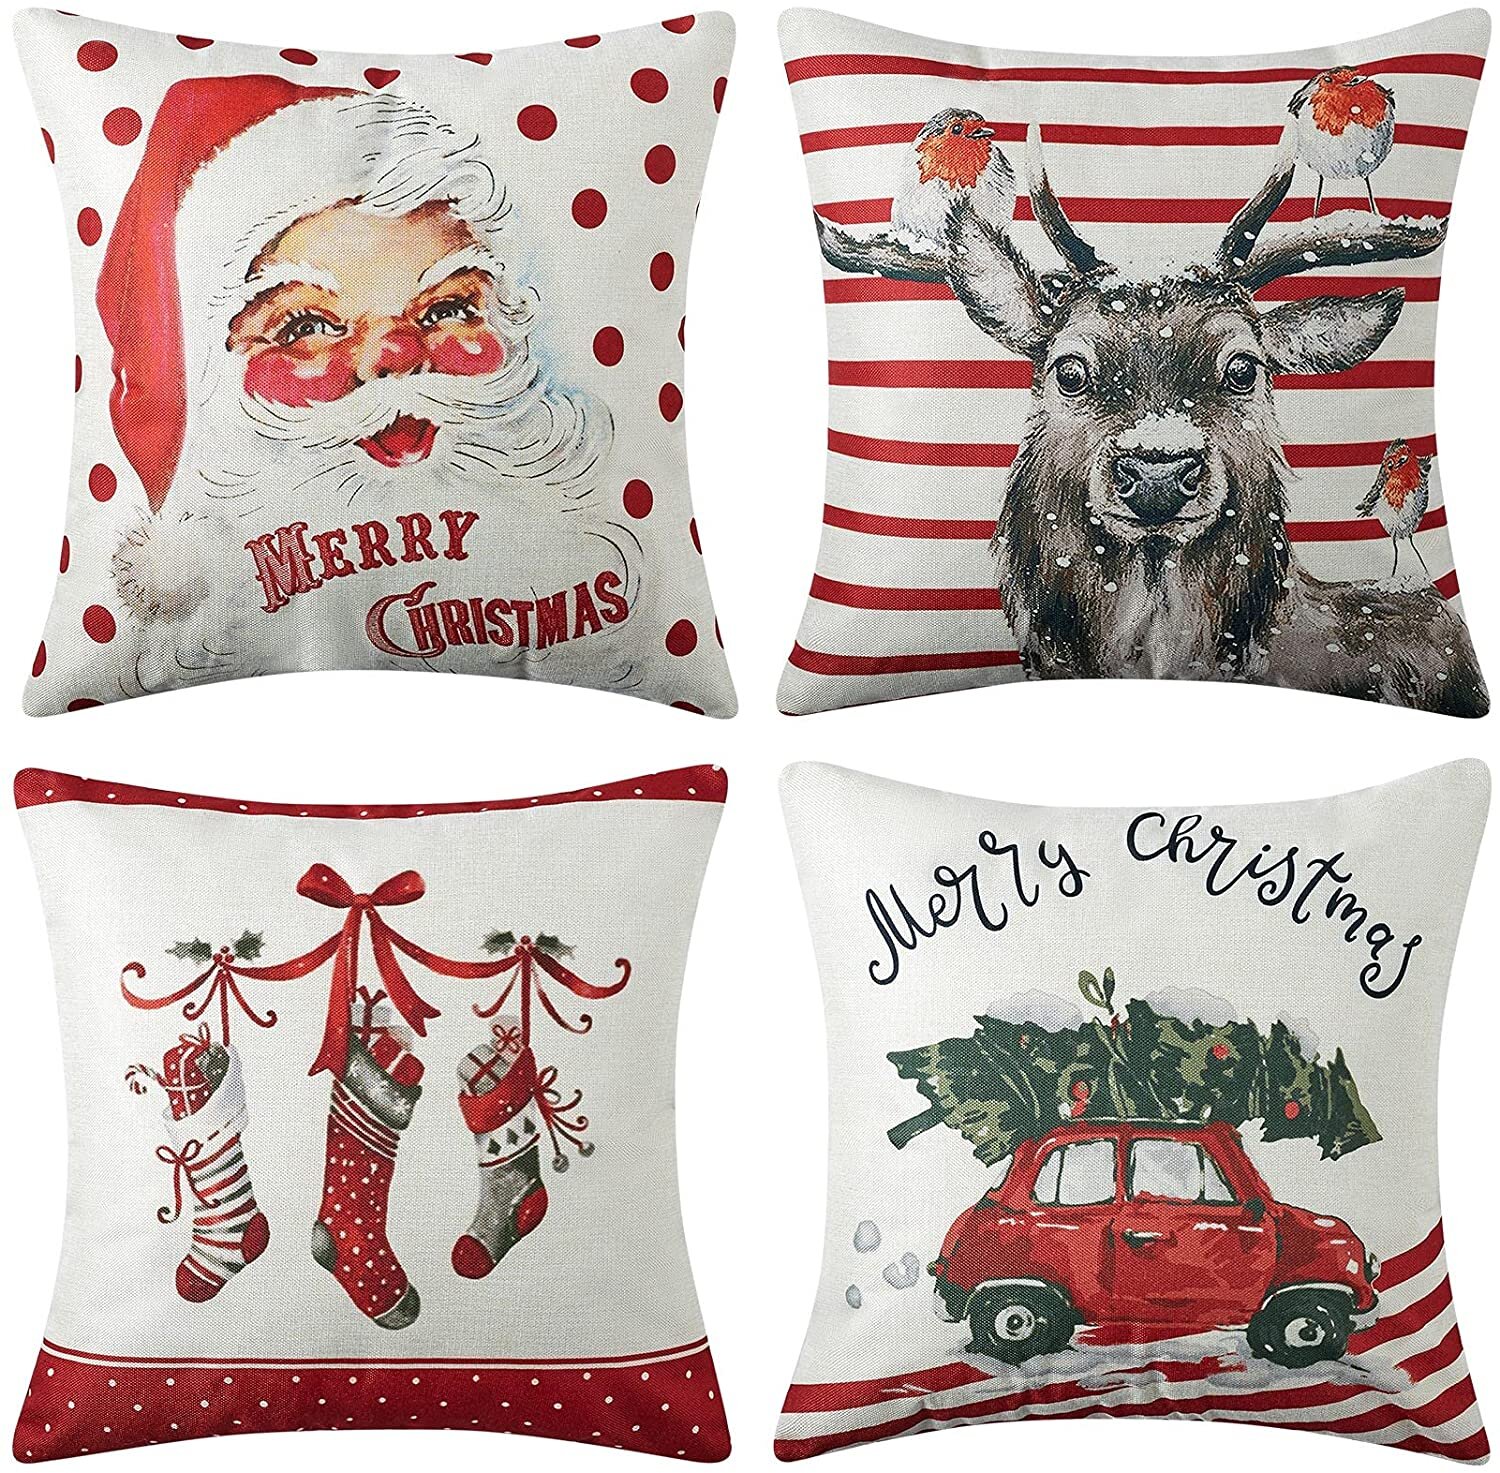 18" Christmas Santa Pillow Cover Case Xmas Cushion Sofa Throw Home Bed Car Decor